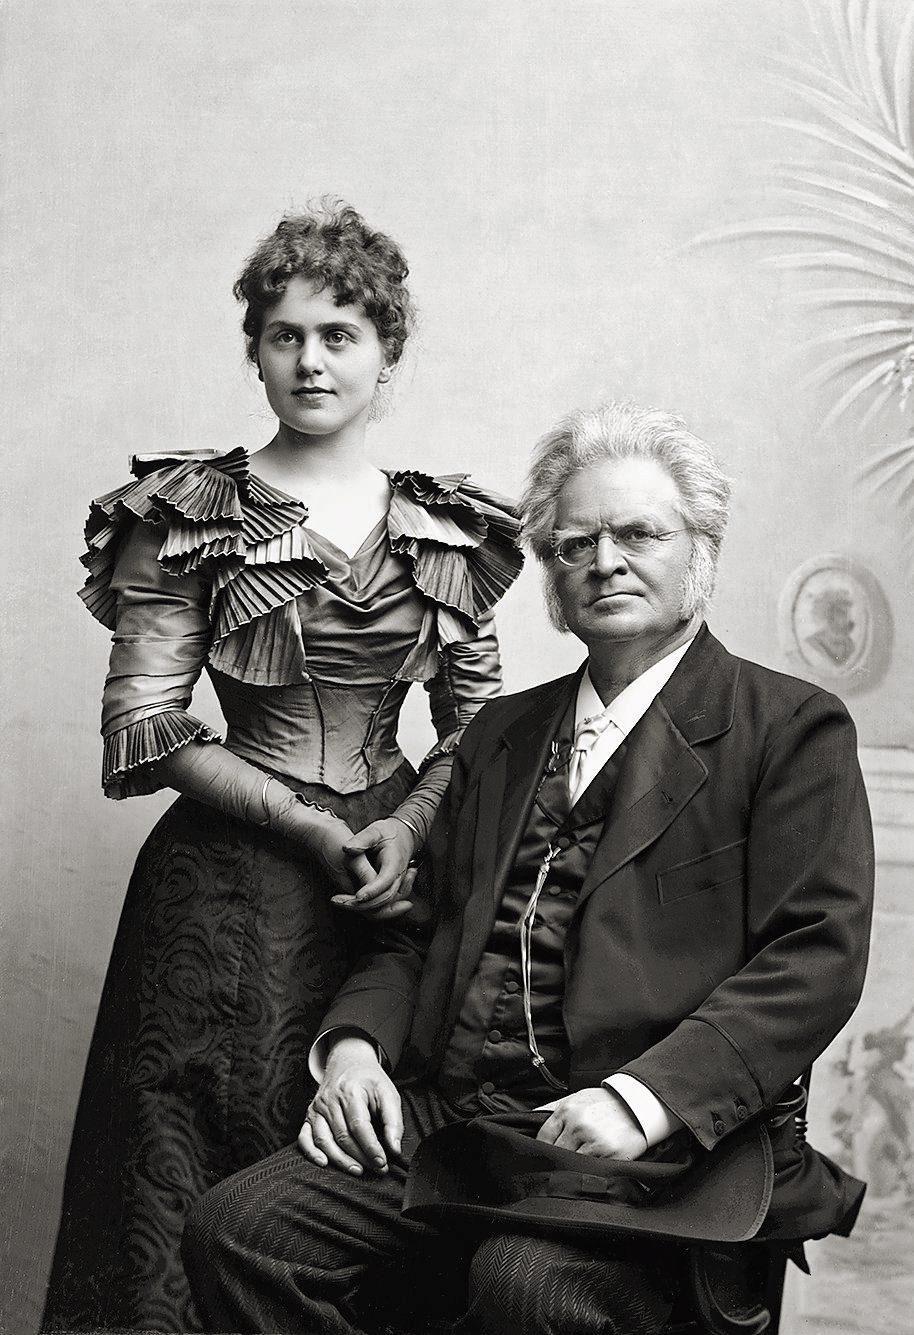 Bergljot Ibsen var sangerinne og gjennomførte omfattende turner i Norge og Danmark med opplesning og sang, sammen med sin far Bjørnstjerne Bjørnson. Her er det fotografert i 1897.